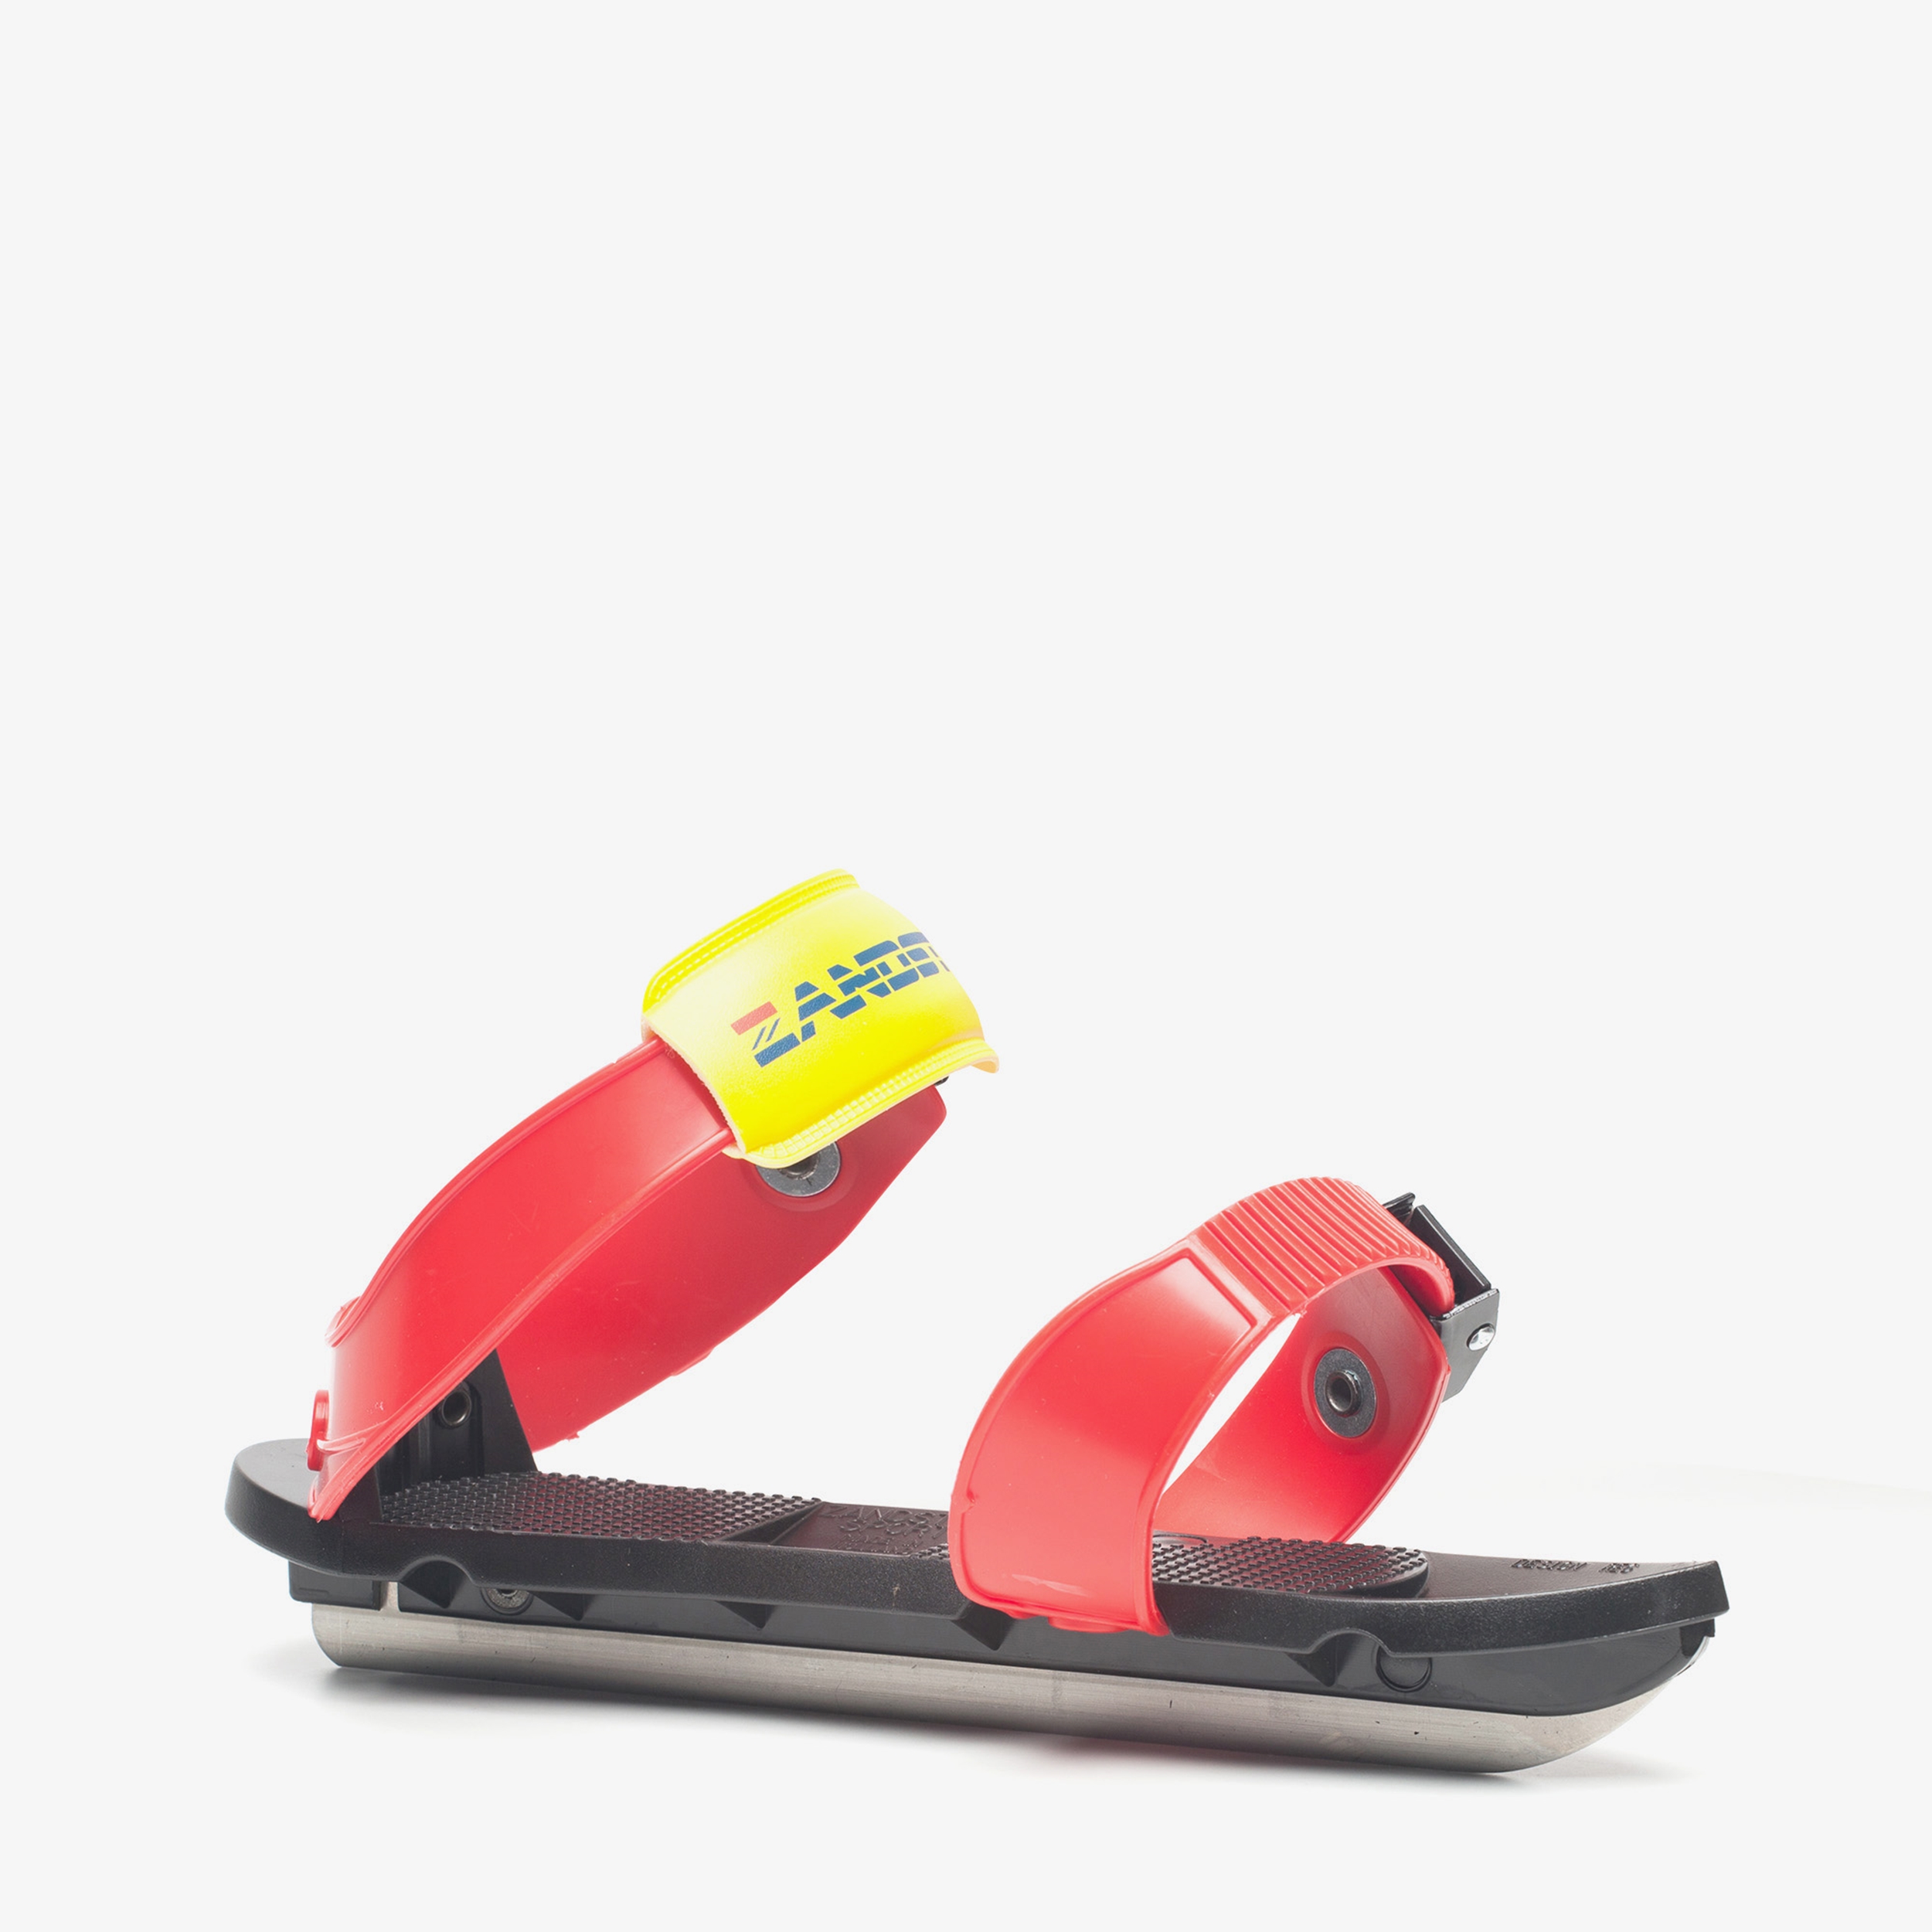 Zandstra easy glider glij-ijzer online bestellen | Scapino